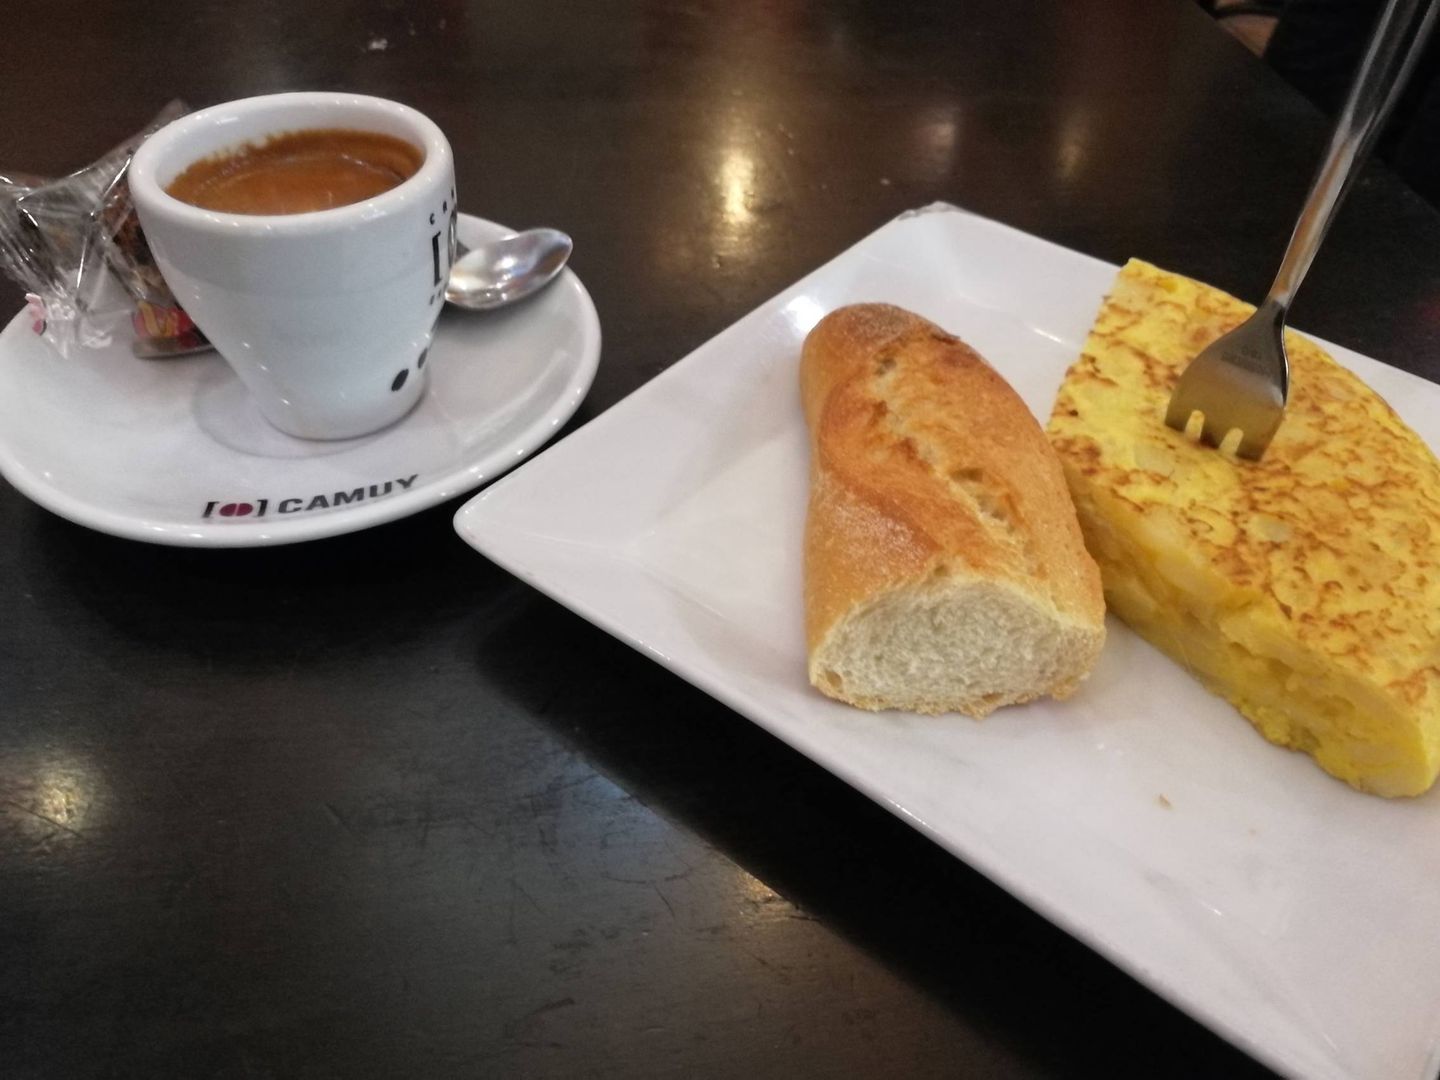 Un pincho de tortilla y un café, la medida de la microeconomía. (Foto: Héctor G. Barnés)